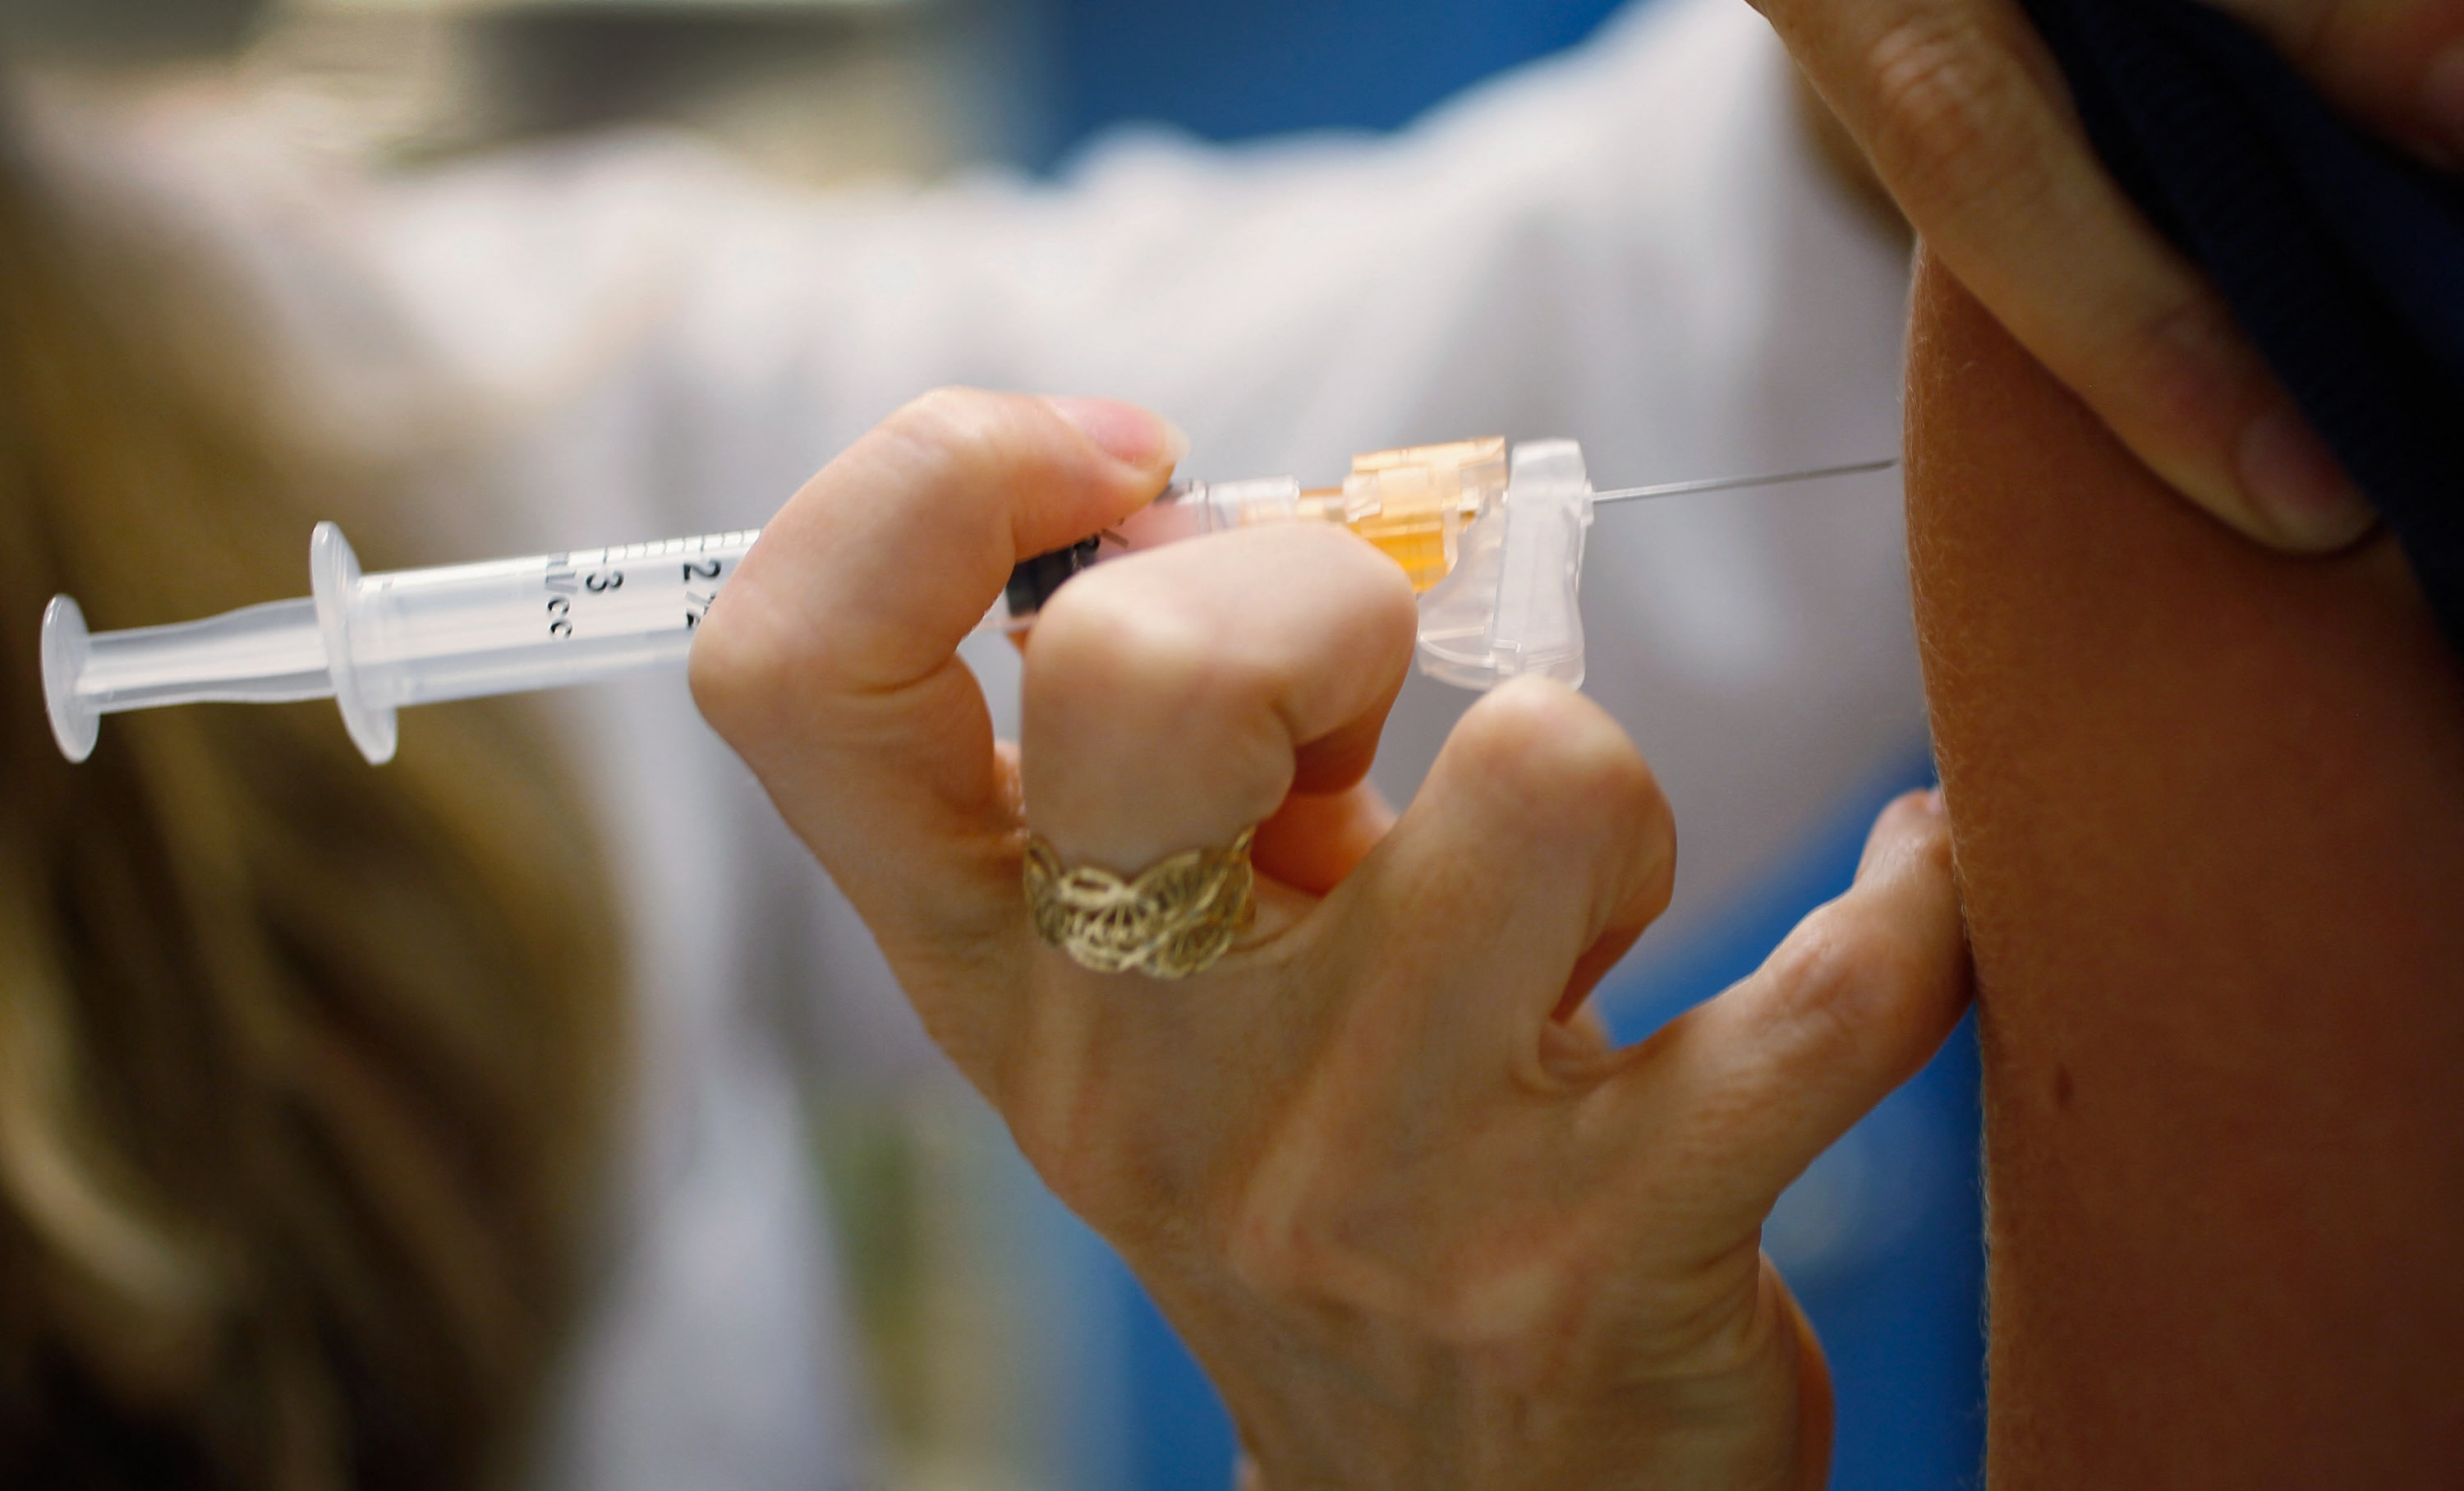 L'accident est survenu à la suite d'une vaccination contre le papillomavirus (Illustration). Getty Images/Joe Raedle